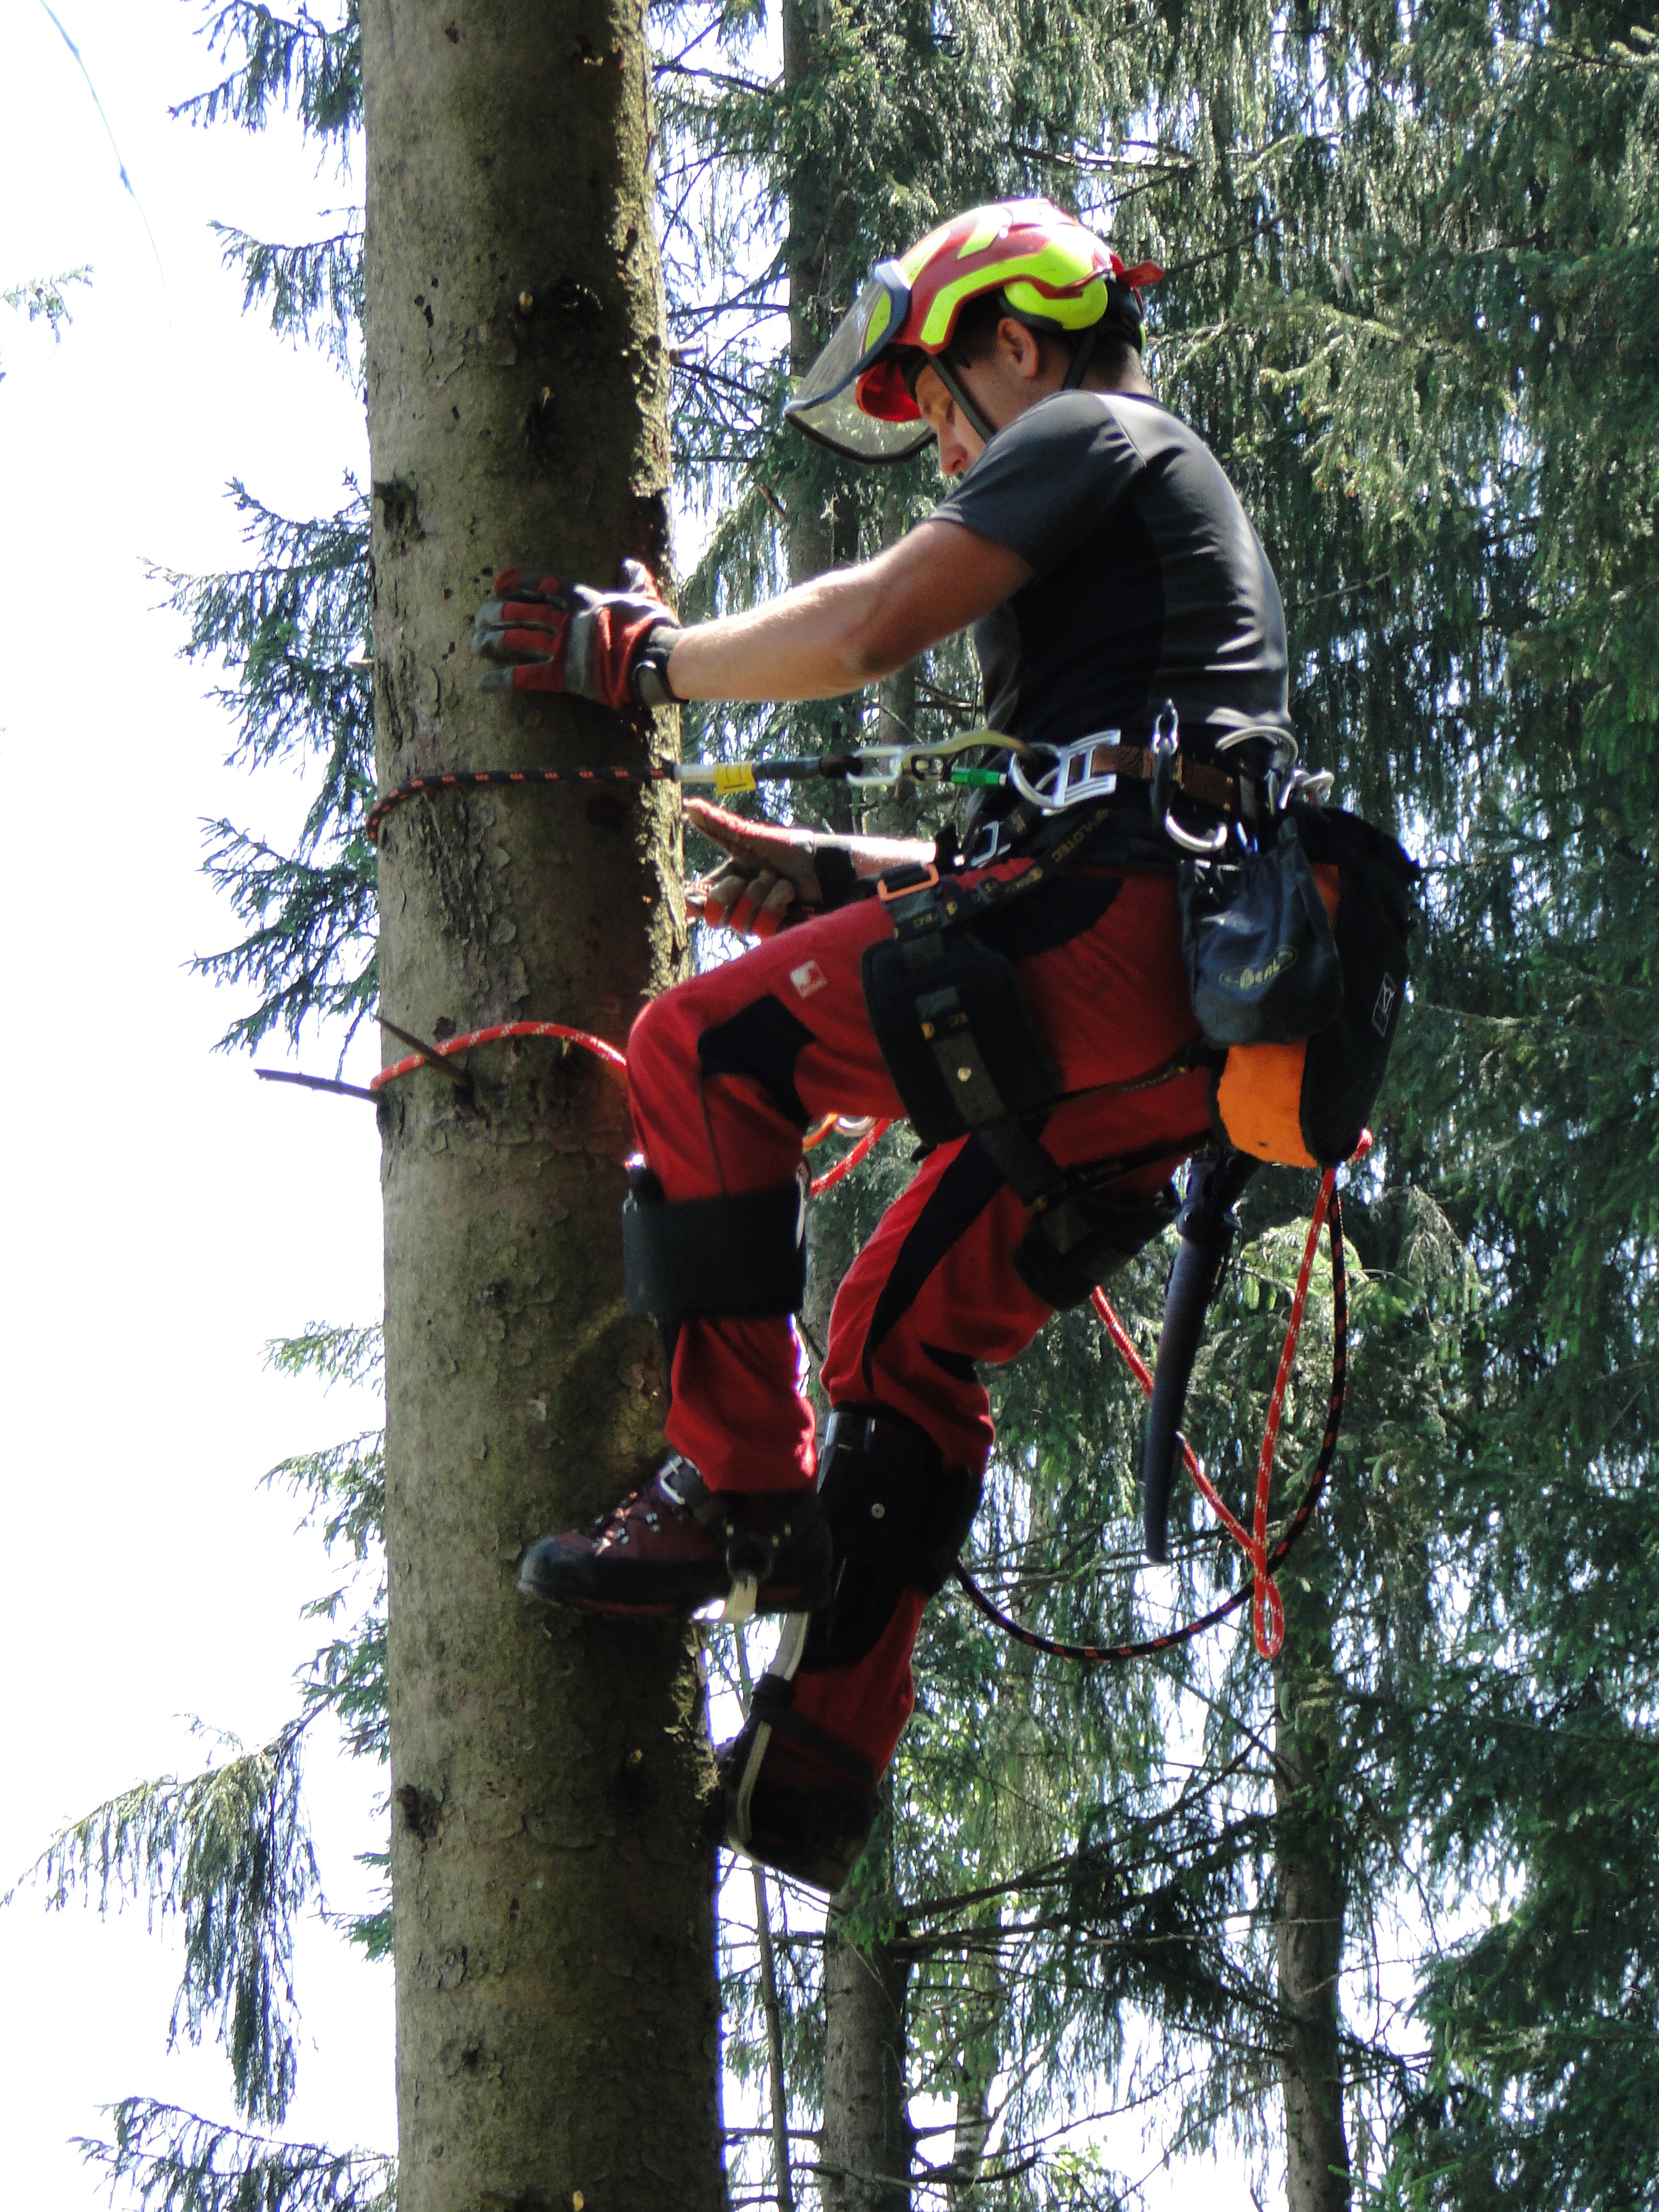 TreeUp Baumpflege Starterset Hobby Klettergurt Steigeisen Sicherungsseil Forst 